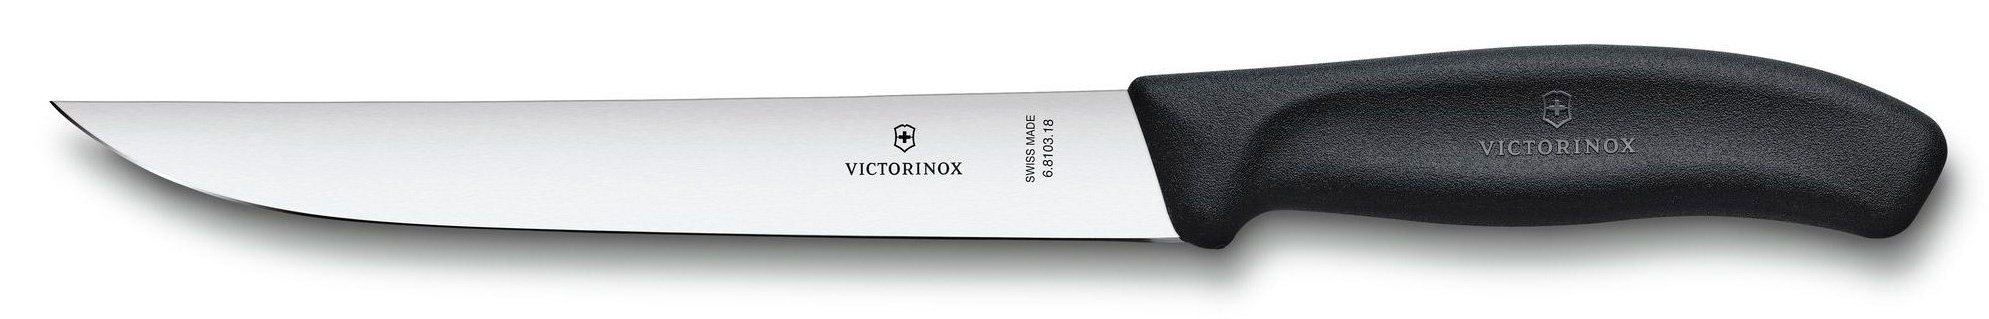 Нож кухонный Victorinox Swiss Classic (6.8103.18B) стальной разделочный лезв.180мм прямая заточка черный блистер